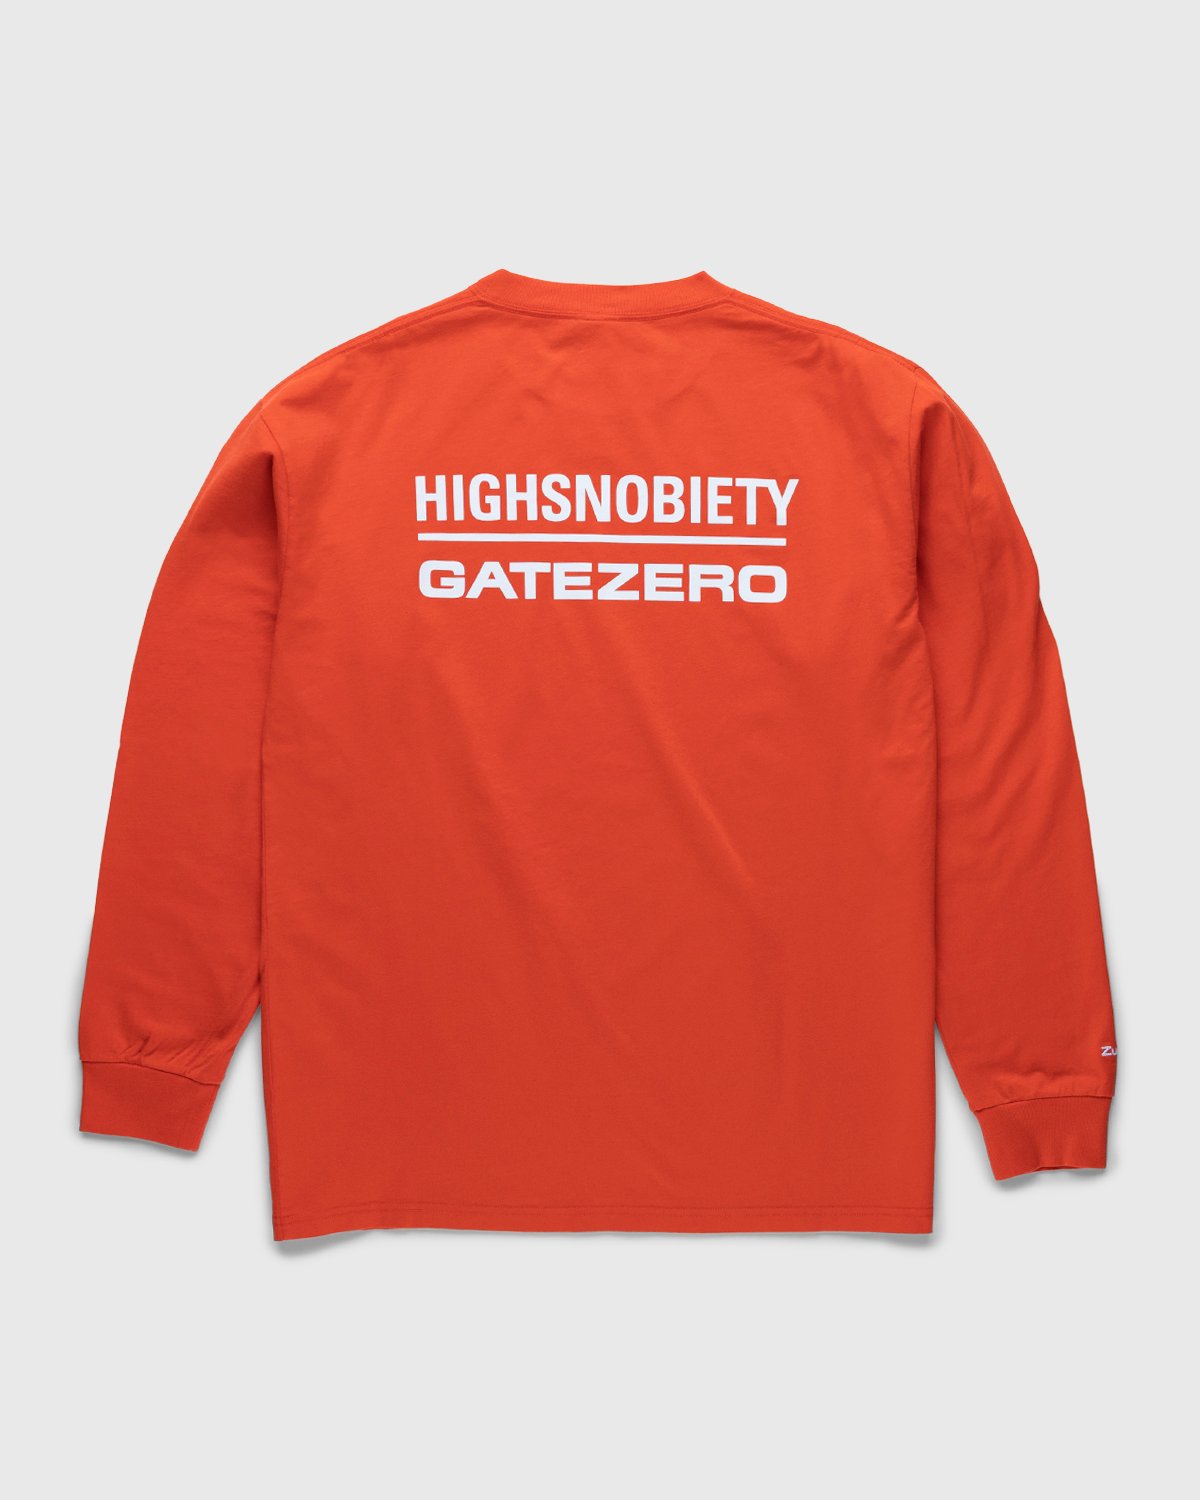 Highsnobiety - GATEZERO Logo Longsleeve Red - Clothing - Red - Image 1